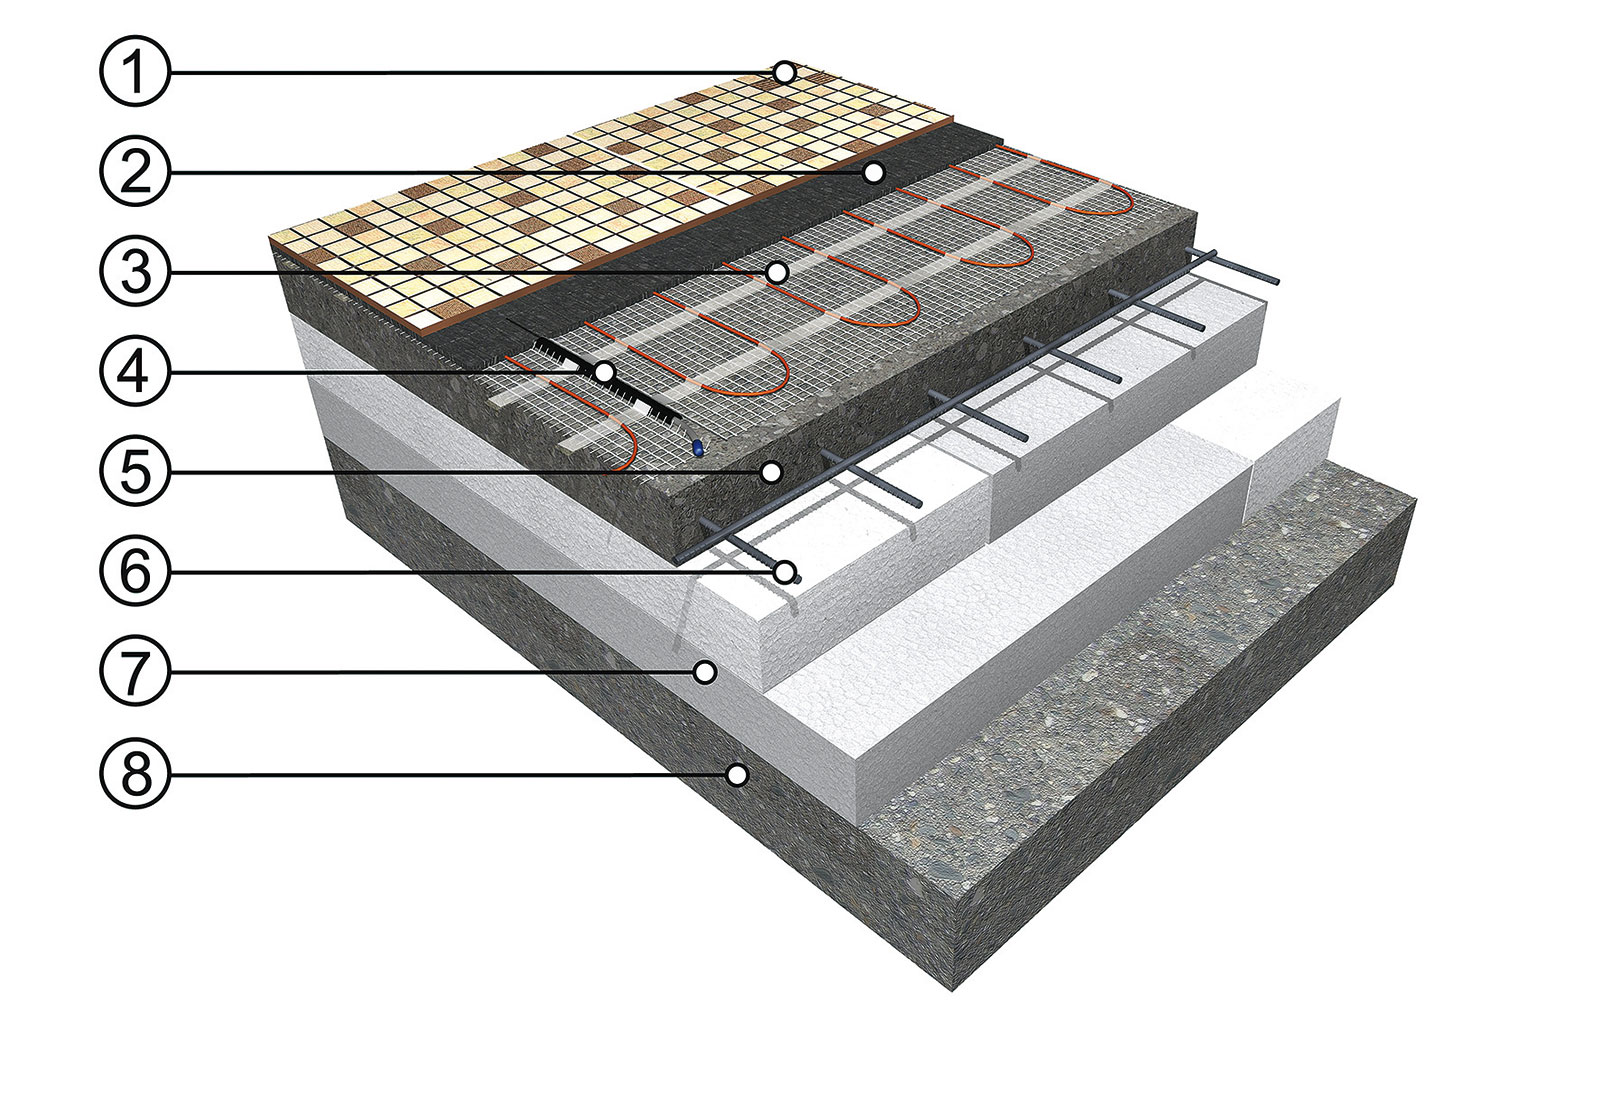 Skladba podlahového vytápění s topnými kabely (A)  Zdroj: FENIX Jeseník
1 – podlahová krytina (dlažba, koberec, vinyl), 2 – podlahová sonda v ochranné trubici, 3 – nosná betonová plovoucí deska, 4 – ocelová výztuž, 5 – topná rohož ECOFLOOR®, 6 – tepelná izolace, 7 – podklad (betonová deska)